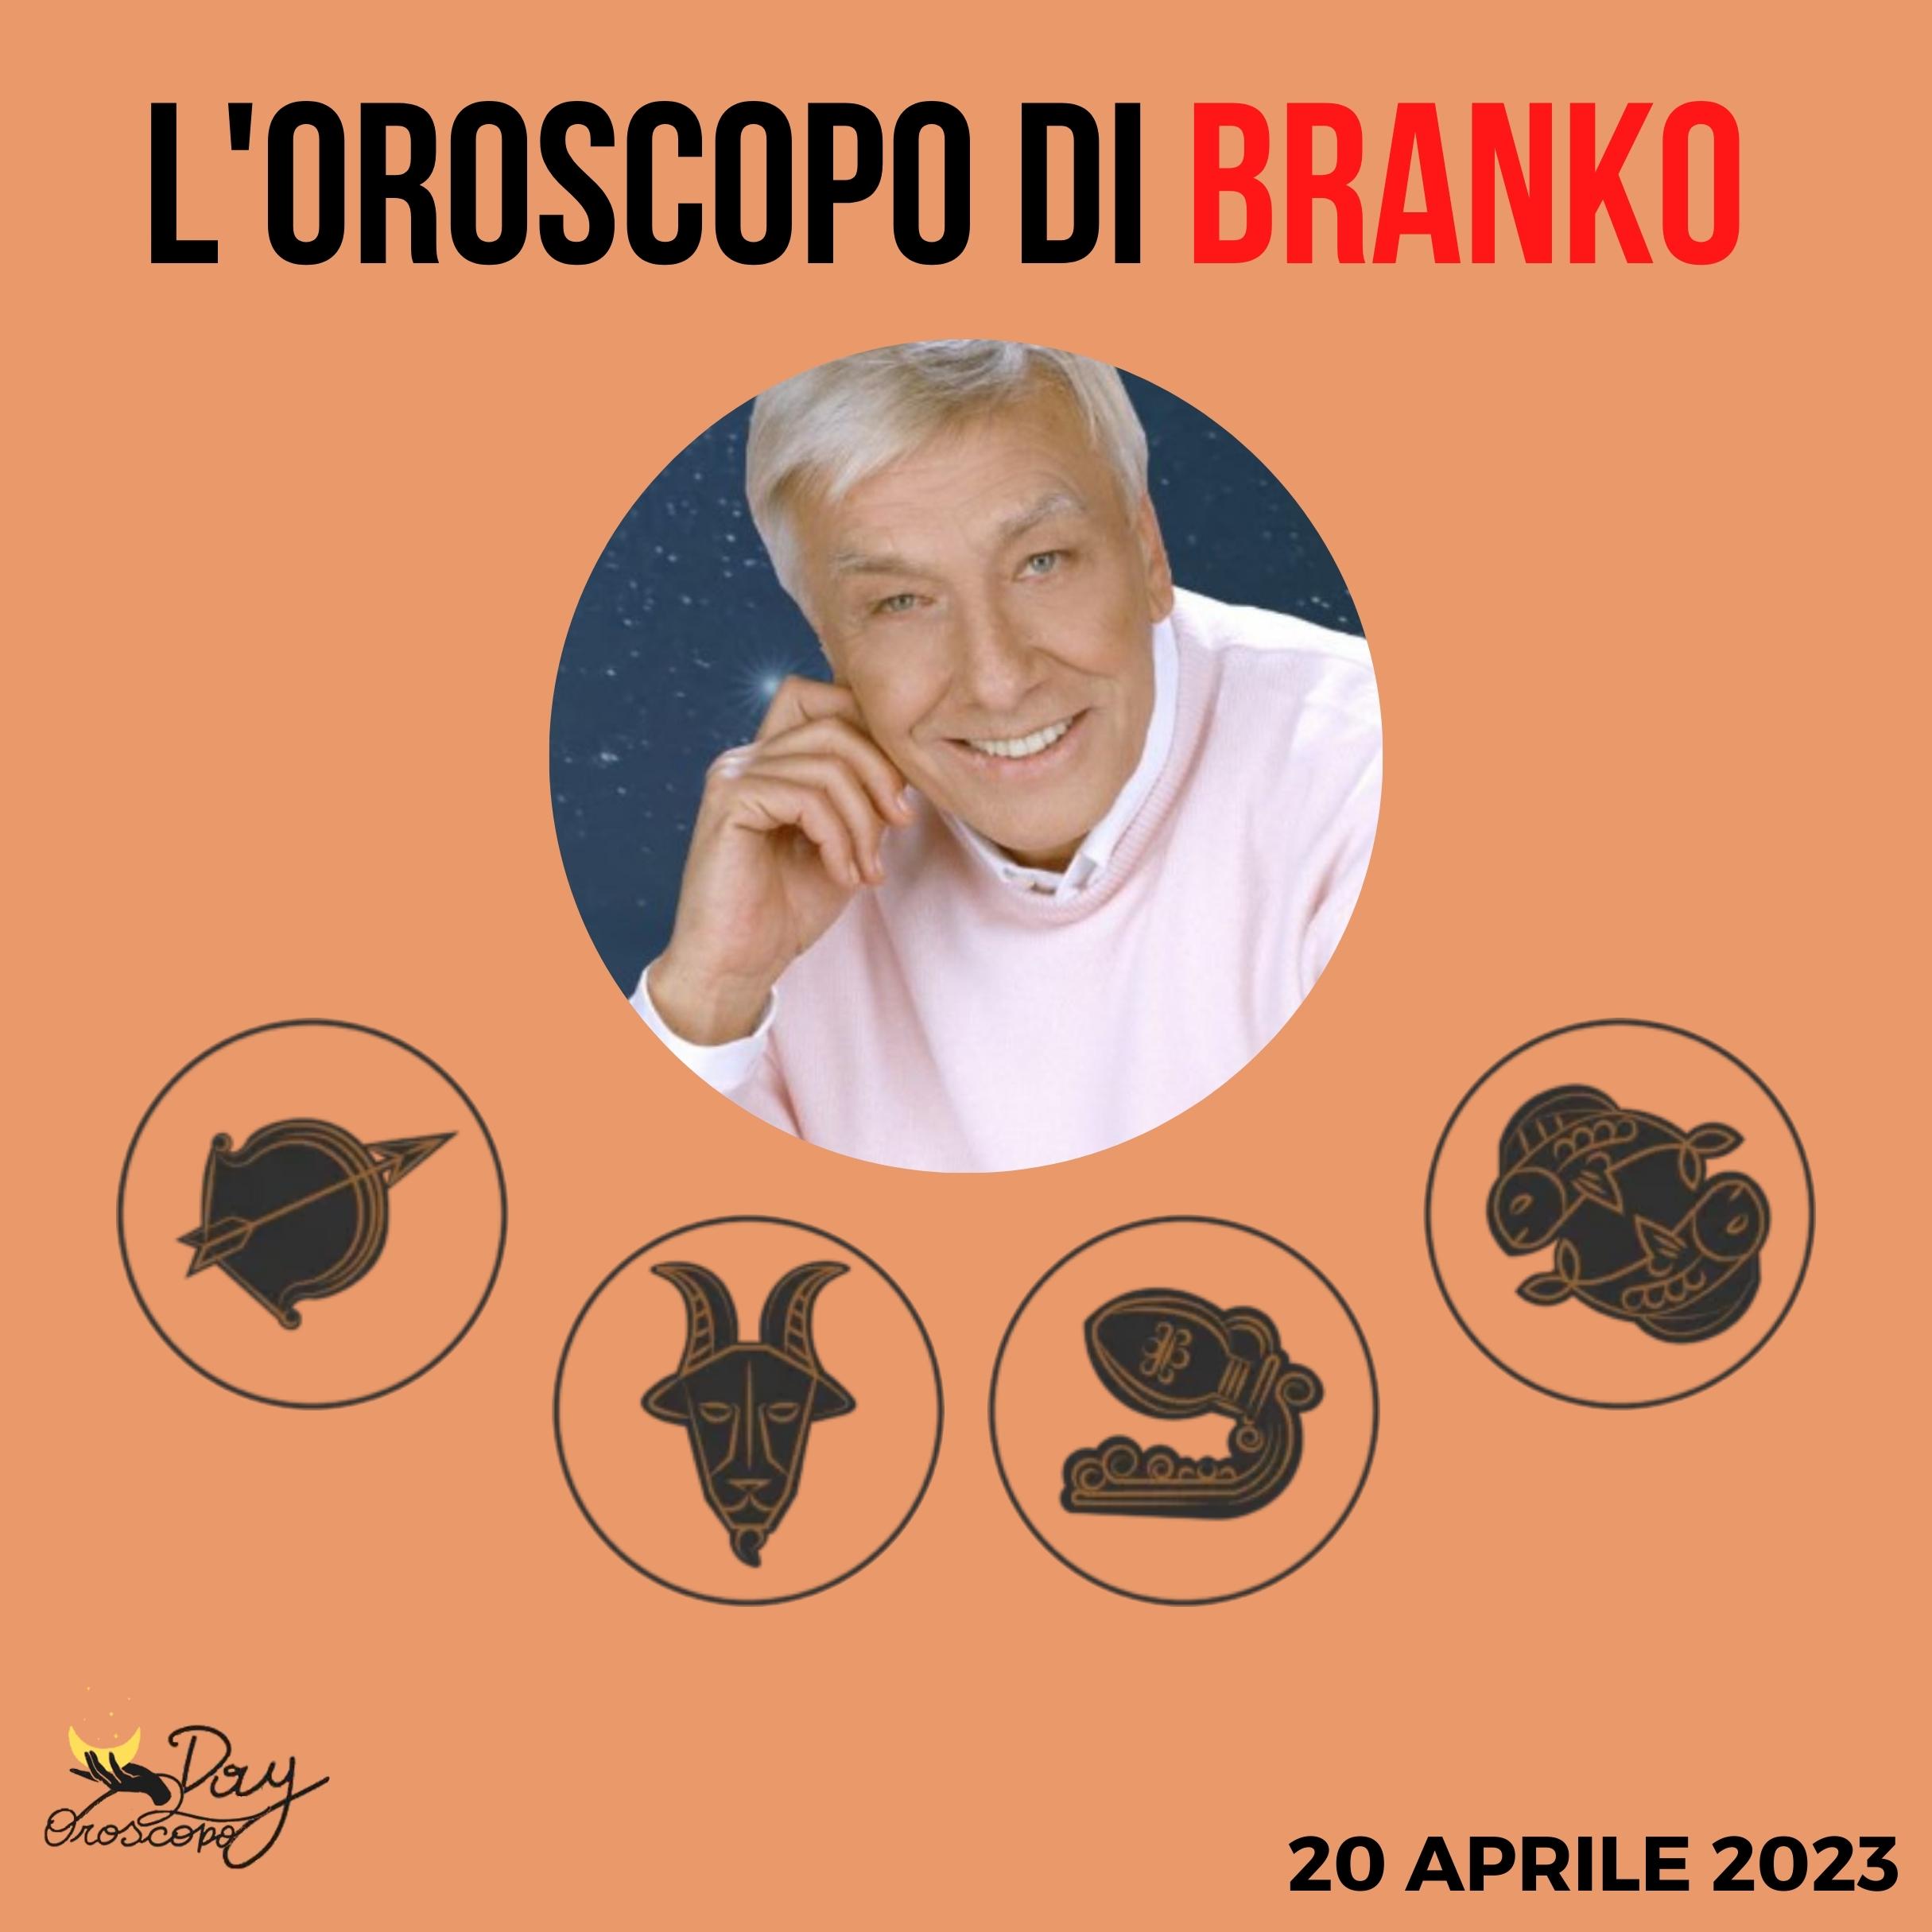 Oroscopo oggi domani Branko 20 aprile Sagittario Capricorno Acquario Pesci